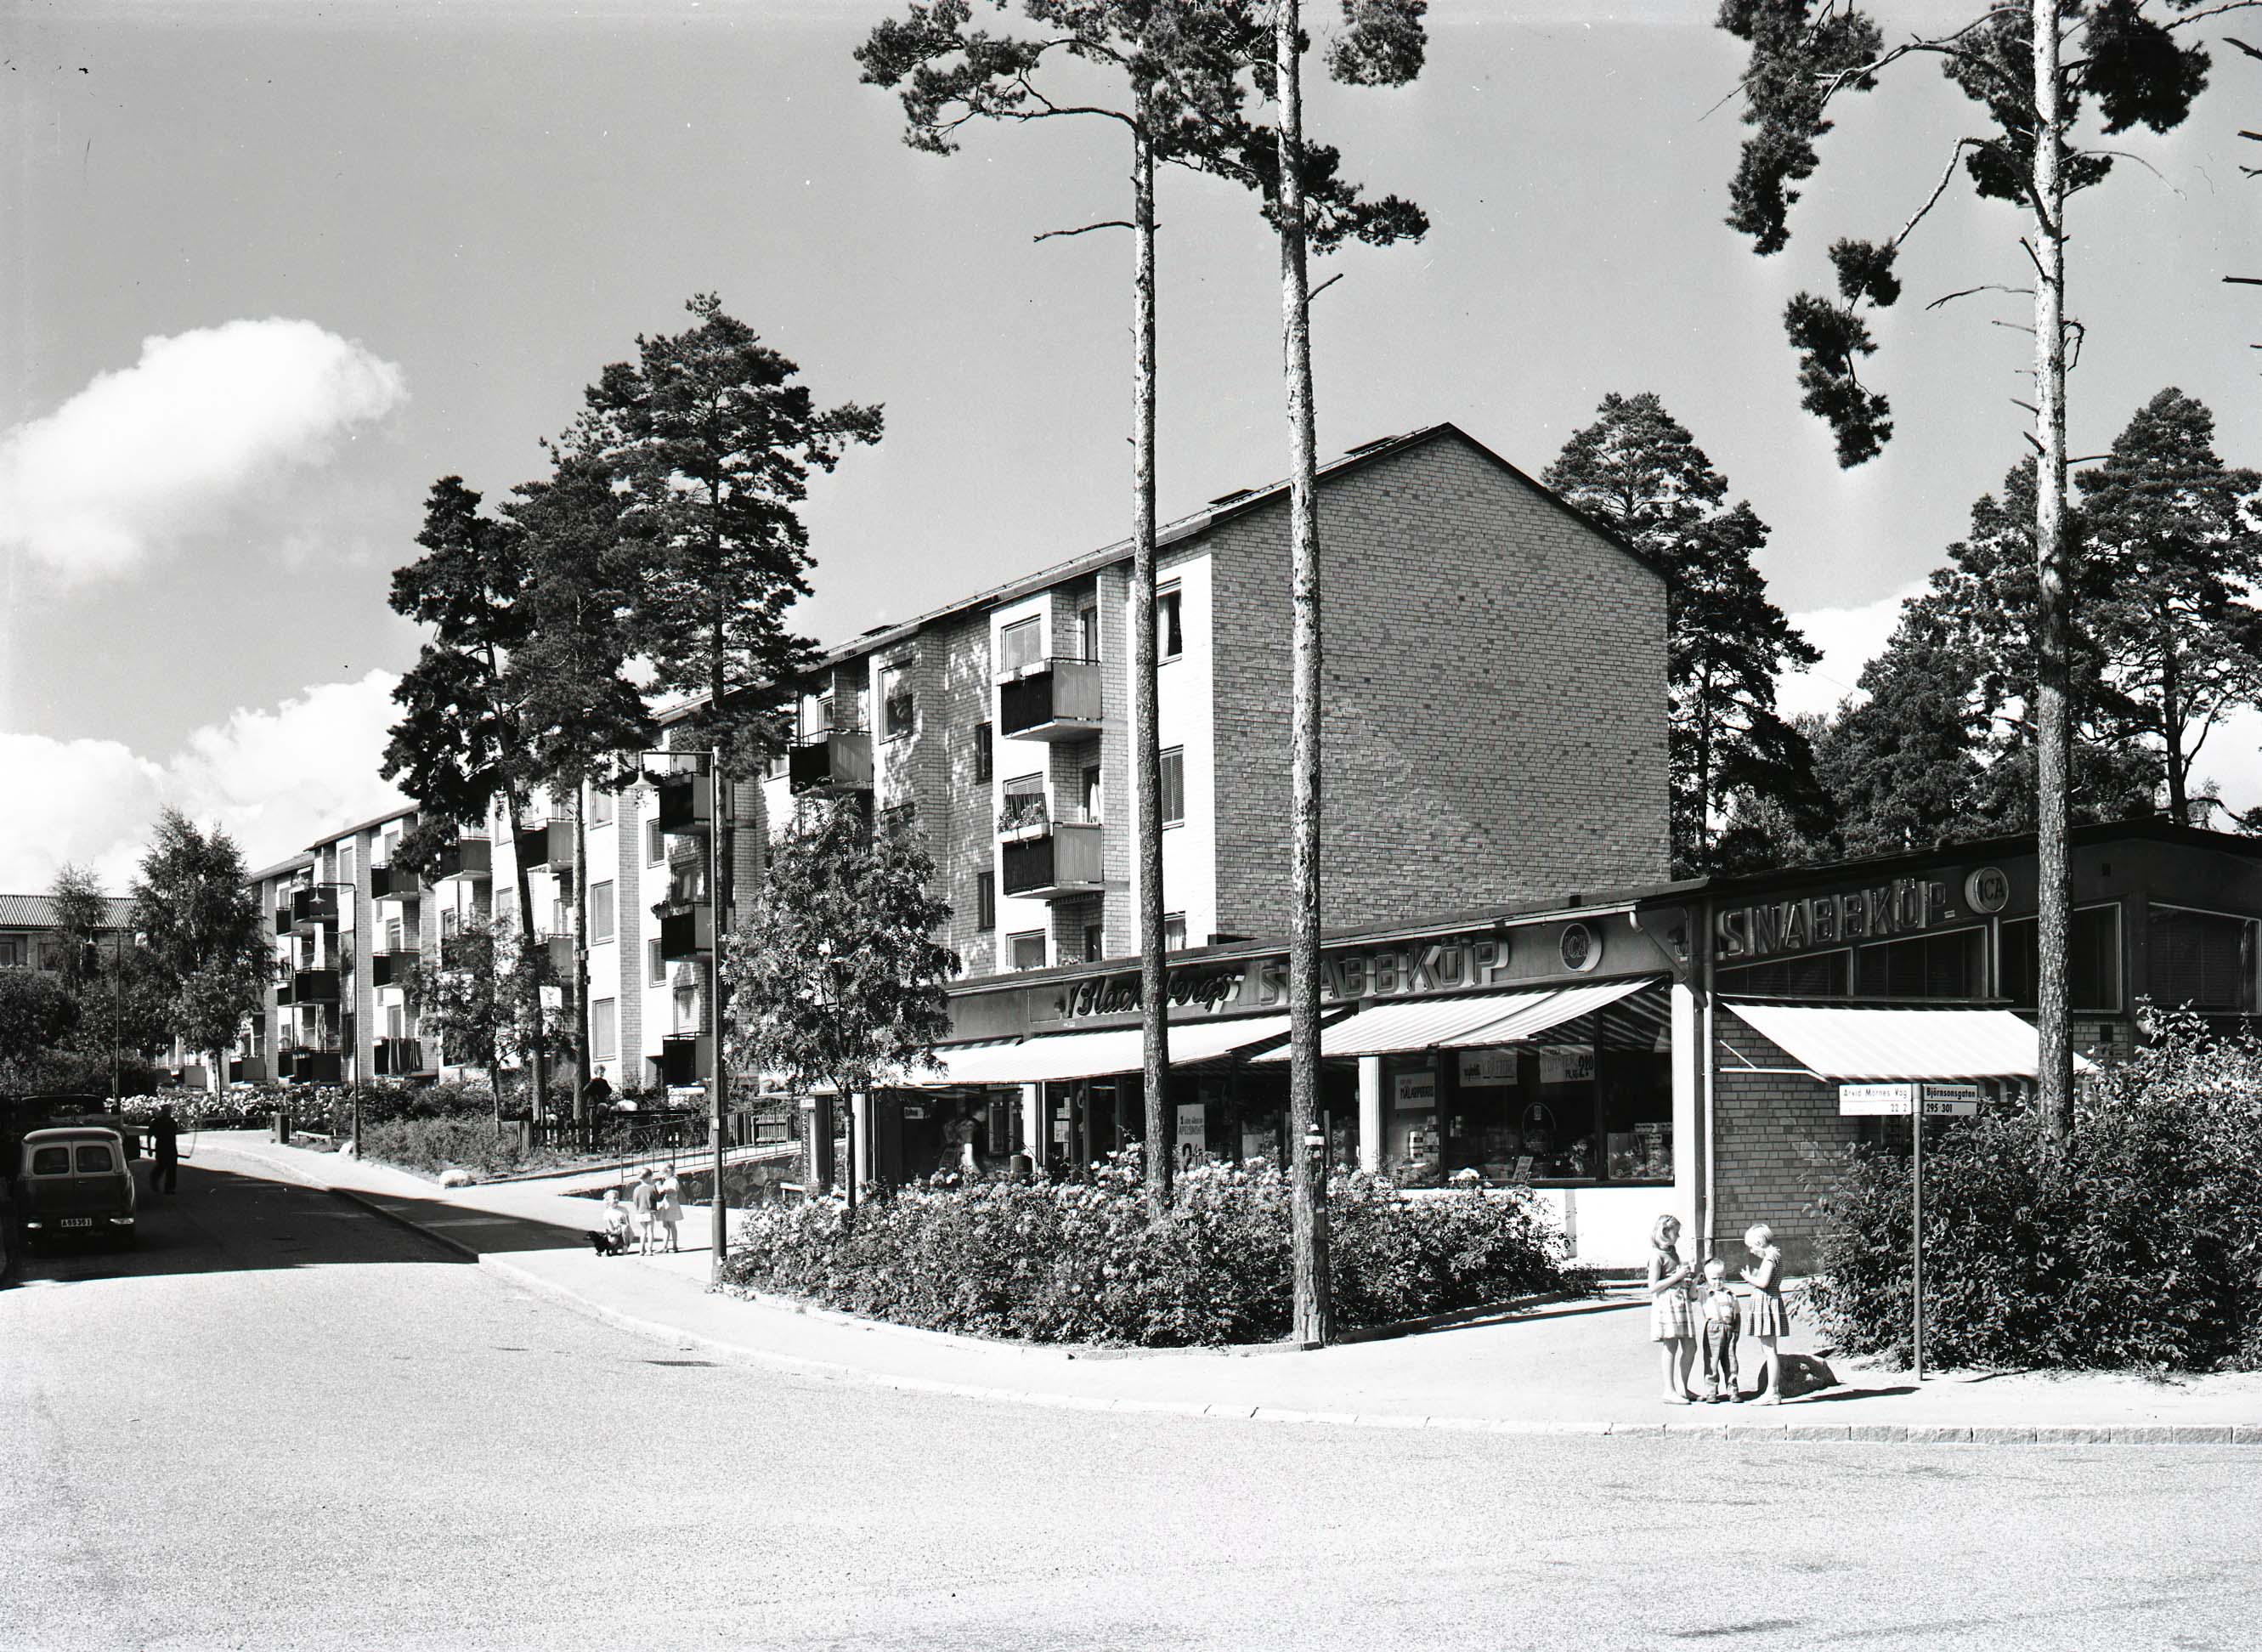 Blackebergs snabbköp, 1958